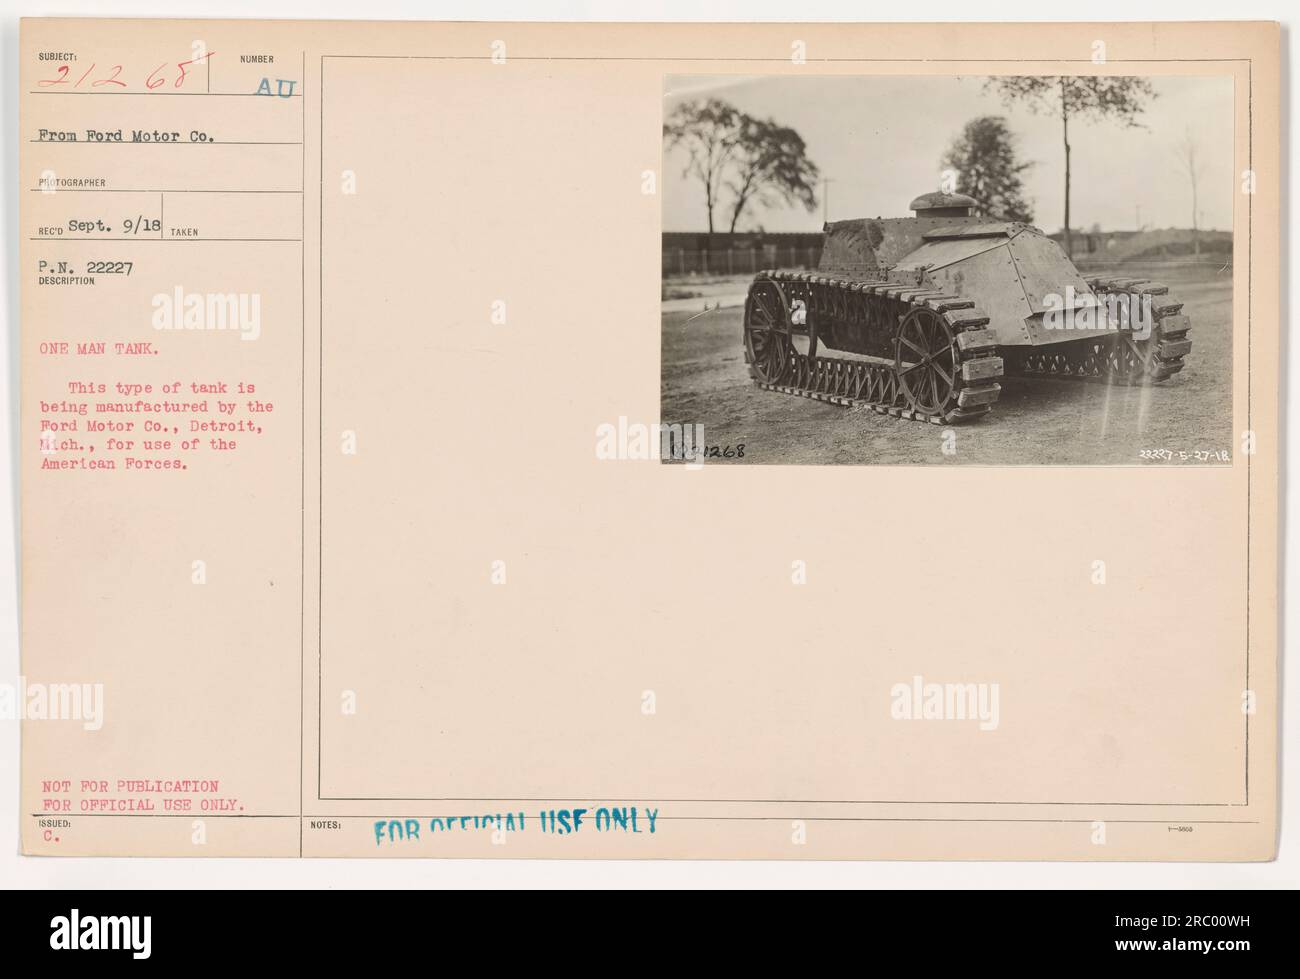 L'image montre un réservoir pour une personne fabriqué par Ford Motor Co. Il a été conçu pour être utilisé par les forces américaines pendant la première Guerre mondiale (50 mots) Banque D'Images